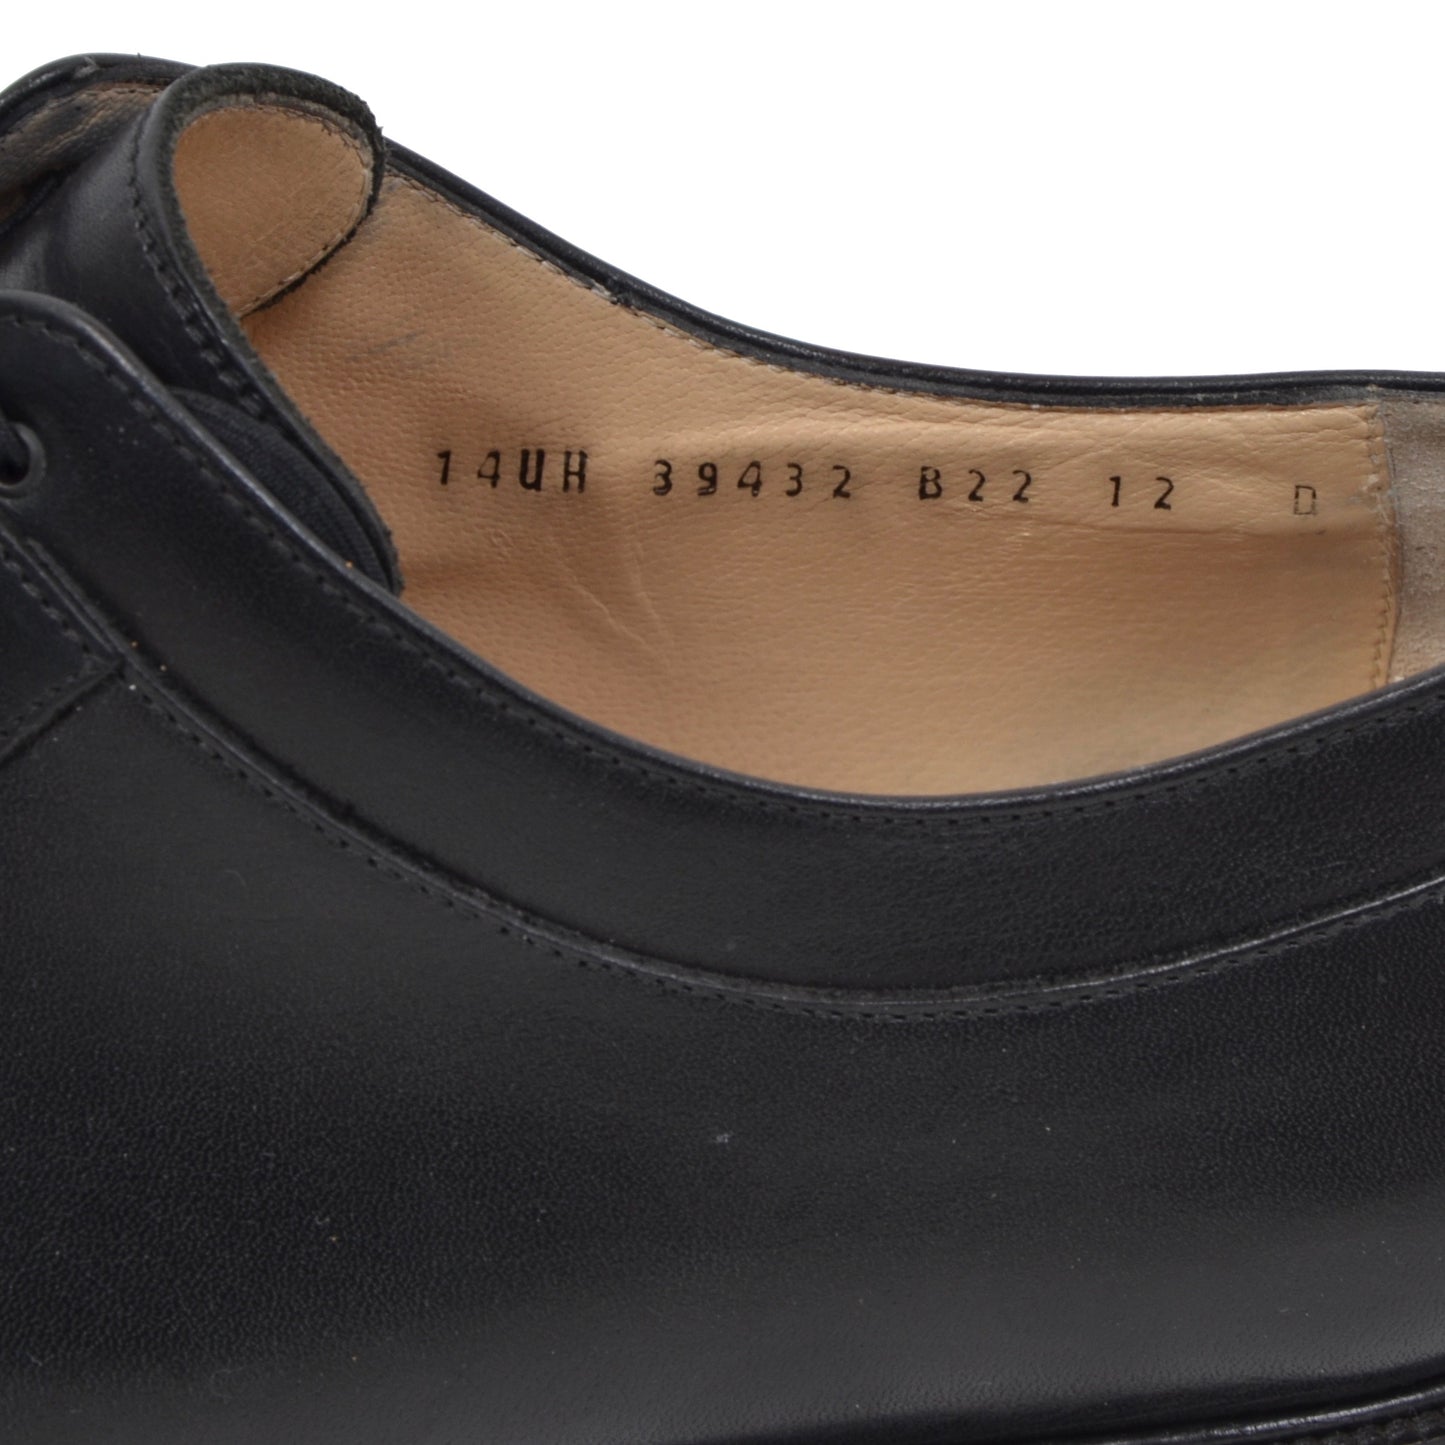 Salvatore Ferragamo Shoes Size 12 D - Black